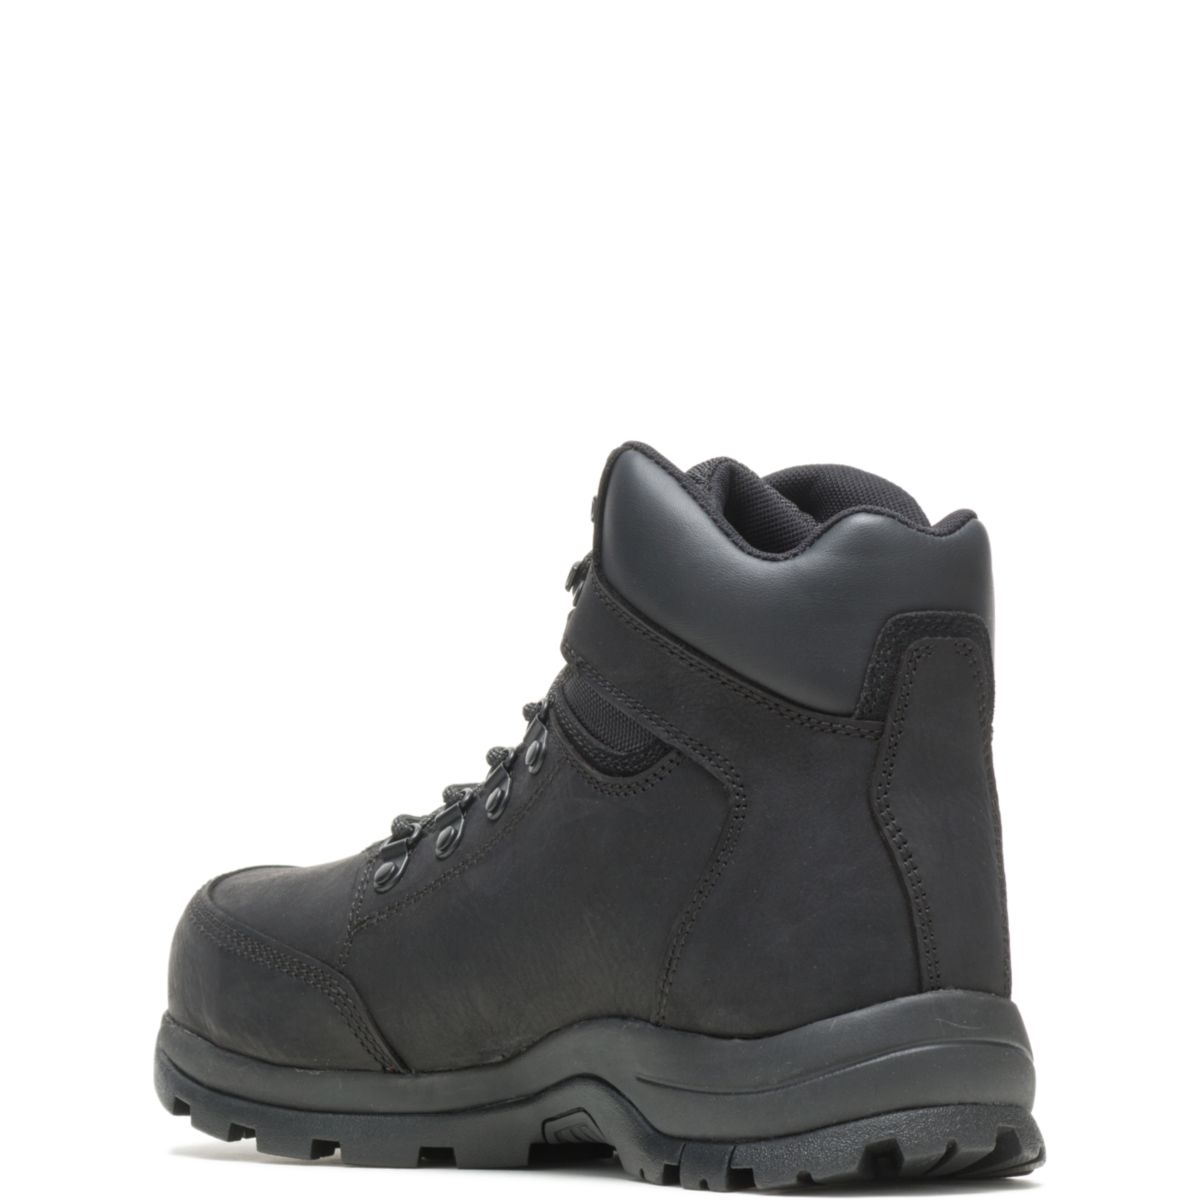 WOLVERINE Men's Grayson Steel Toe Waterproof Work Boot Black - W211042 BLACK - BLACK, 8.5